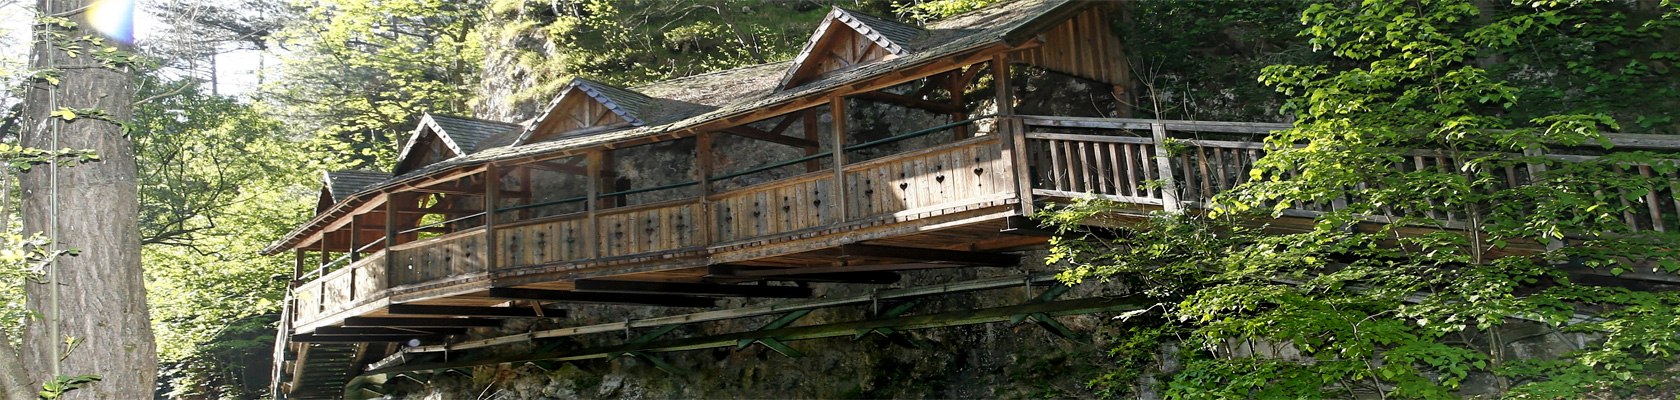 Die Quarbbrücke am Piestingtalradweg, © IG der Gemeinden des Piestingtals